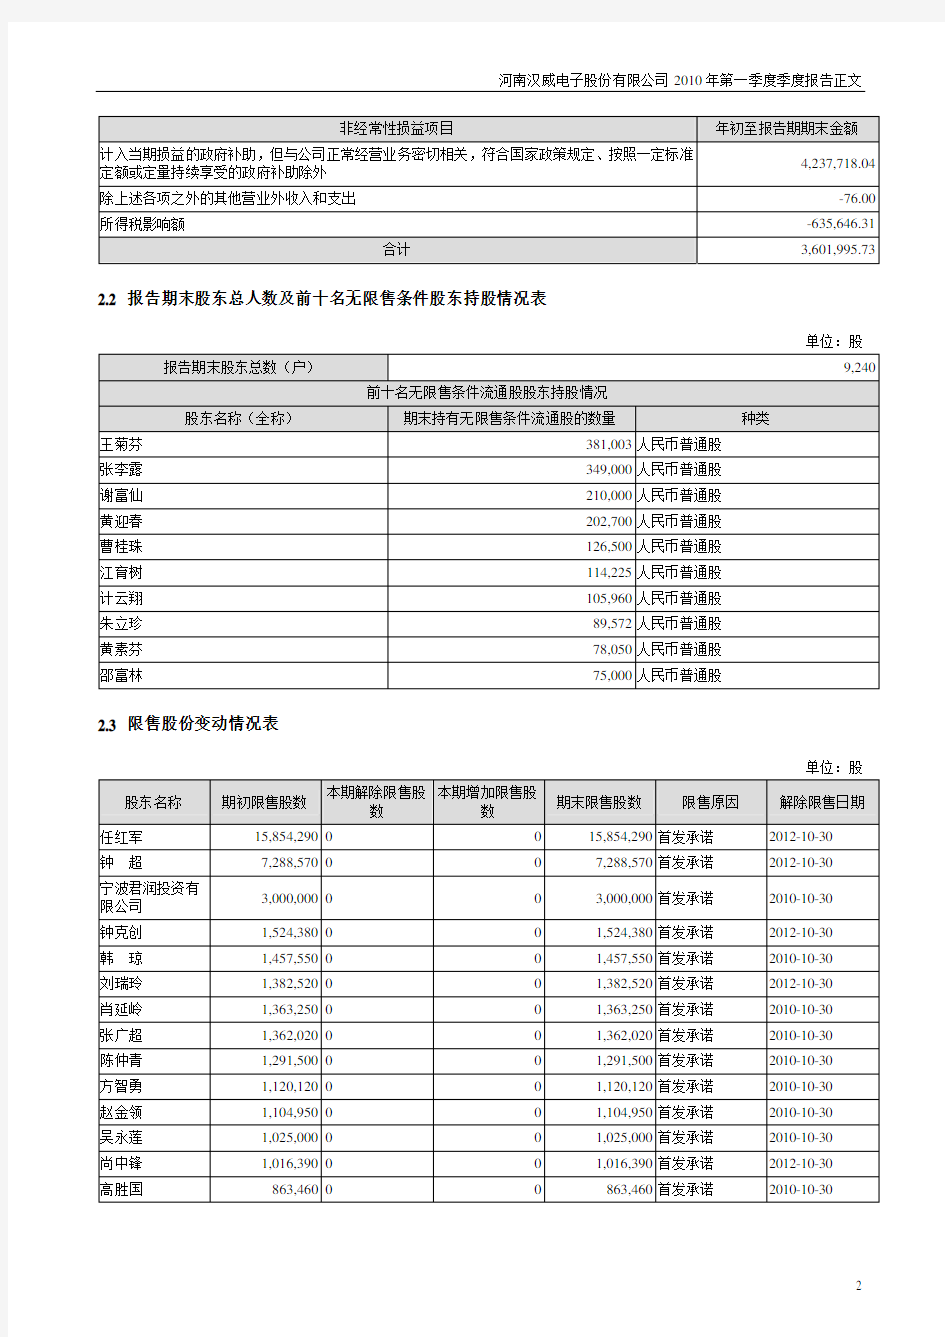 河南汉威电子股份有限公司2010年第一季度季度报告正文